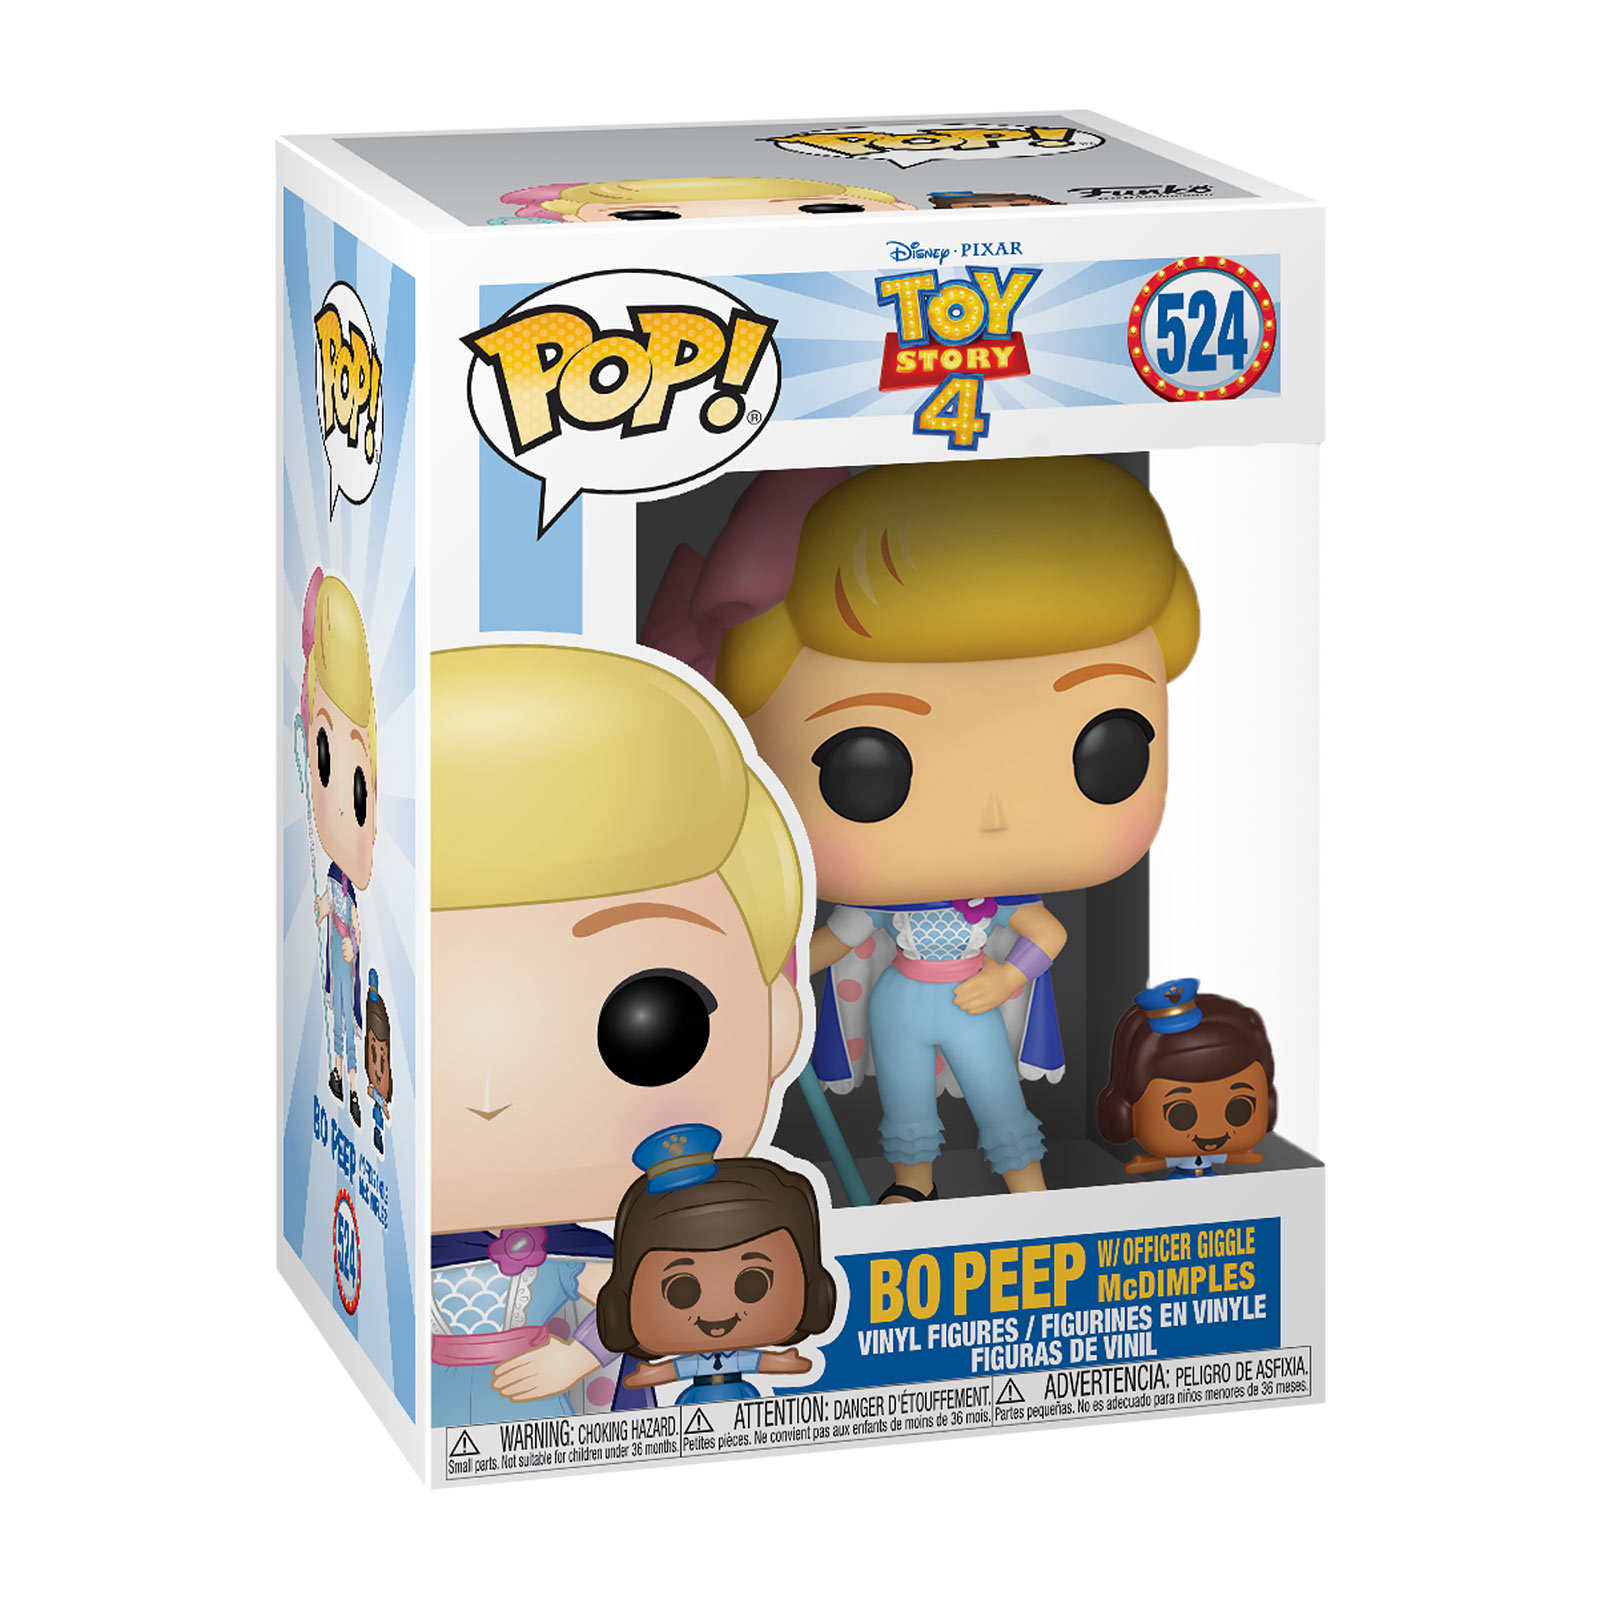 Toy Story - Bo Peep met officier Giggle McDimples Funko Pop Figurine